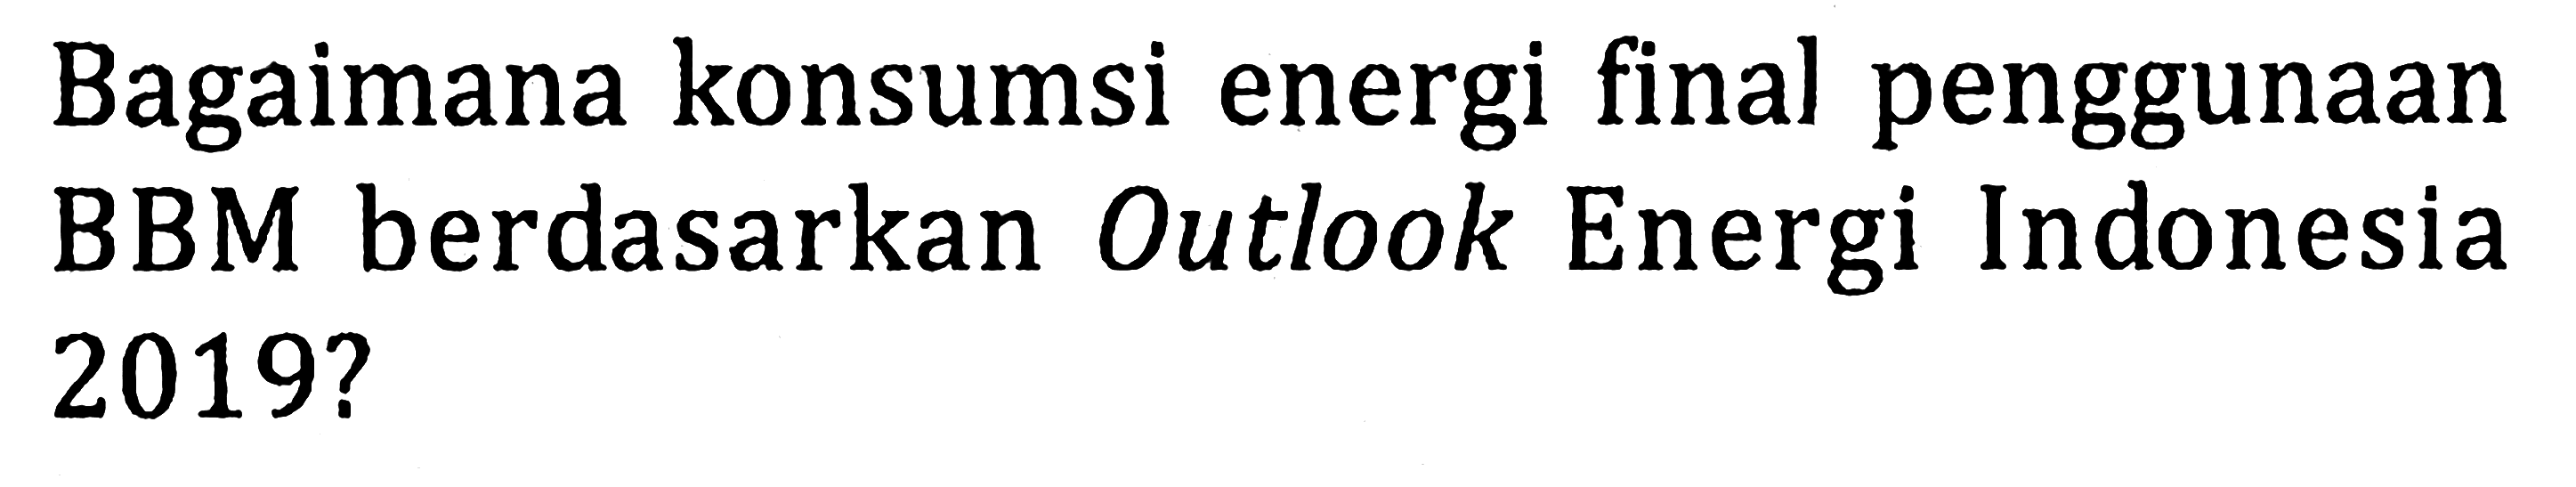 Bagaimana konsumsi energi final penggunaan BBM berdasarkan Outlook Energi Indonesia  2019 ? 